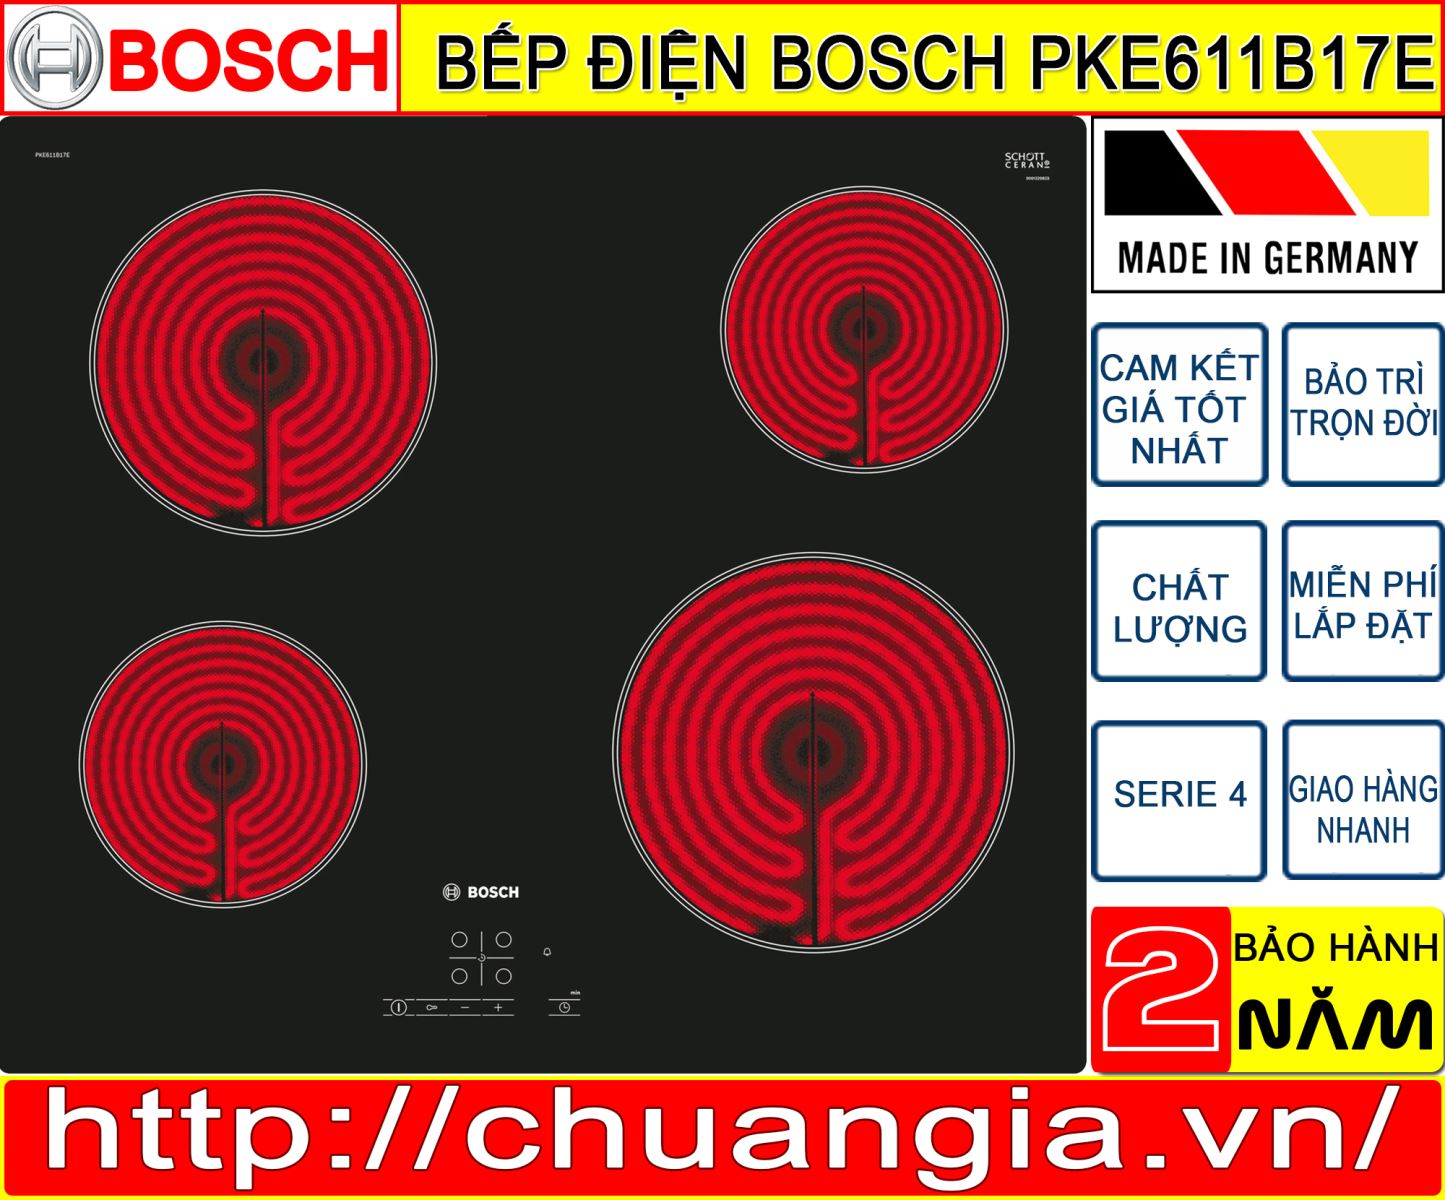 Bếp Điện Bosch PKE611B17E, Bếp Điện Bosch PKK611B17E, bếp điện, bếp từ bosch 2 vùng nấu, bếp từ bosch 3 vùng nấu, bếp từ bosch puc631bb2e, bếp từ bosch ppi82560ms, bếp từ bosch pid675dc1e, bếp từ bosch pij651fc1e, bếp từ bosch serie 8, bếp từ bosch puj631bb2e